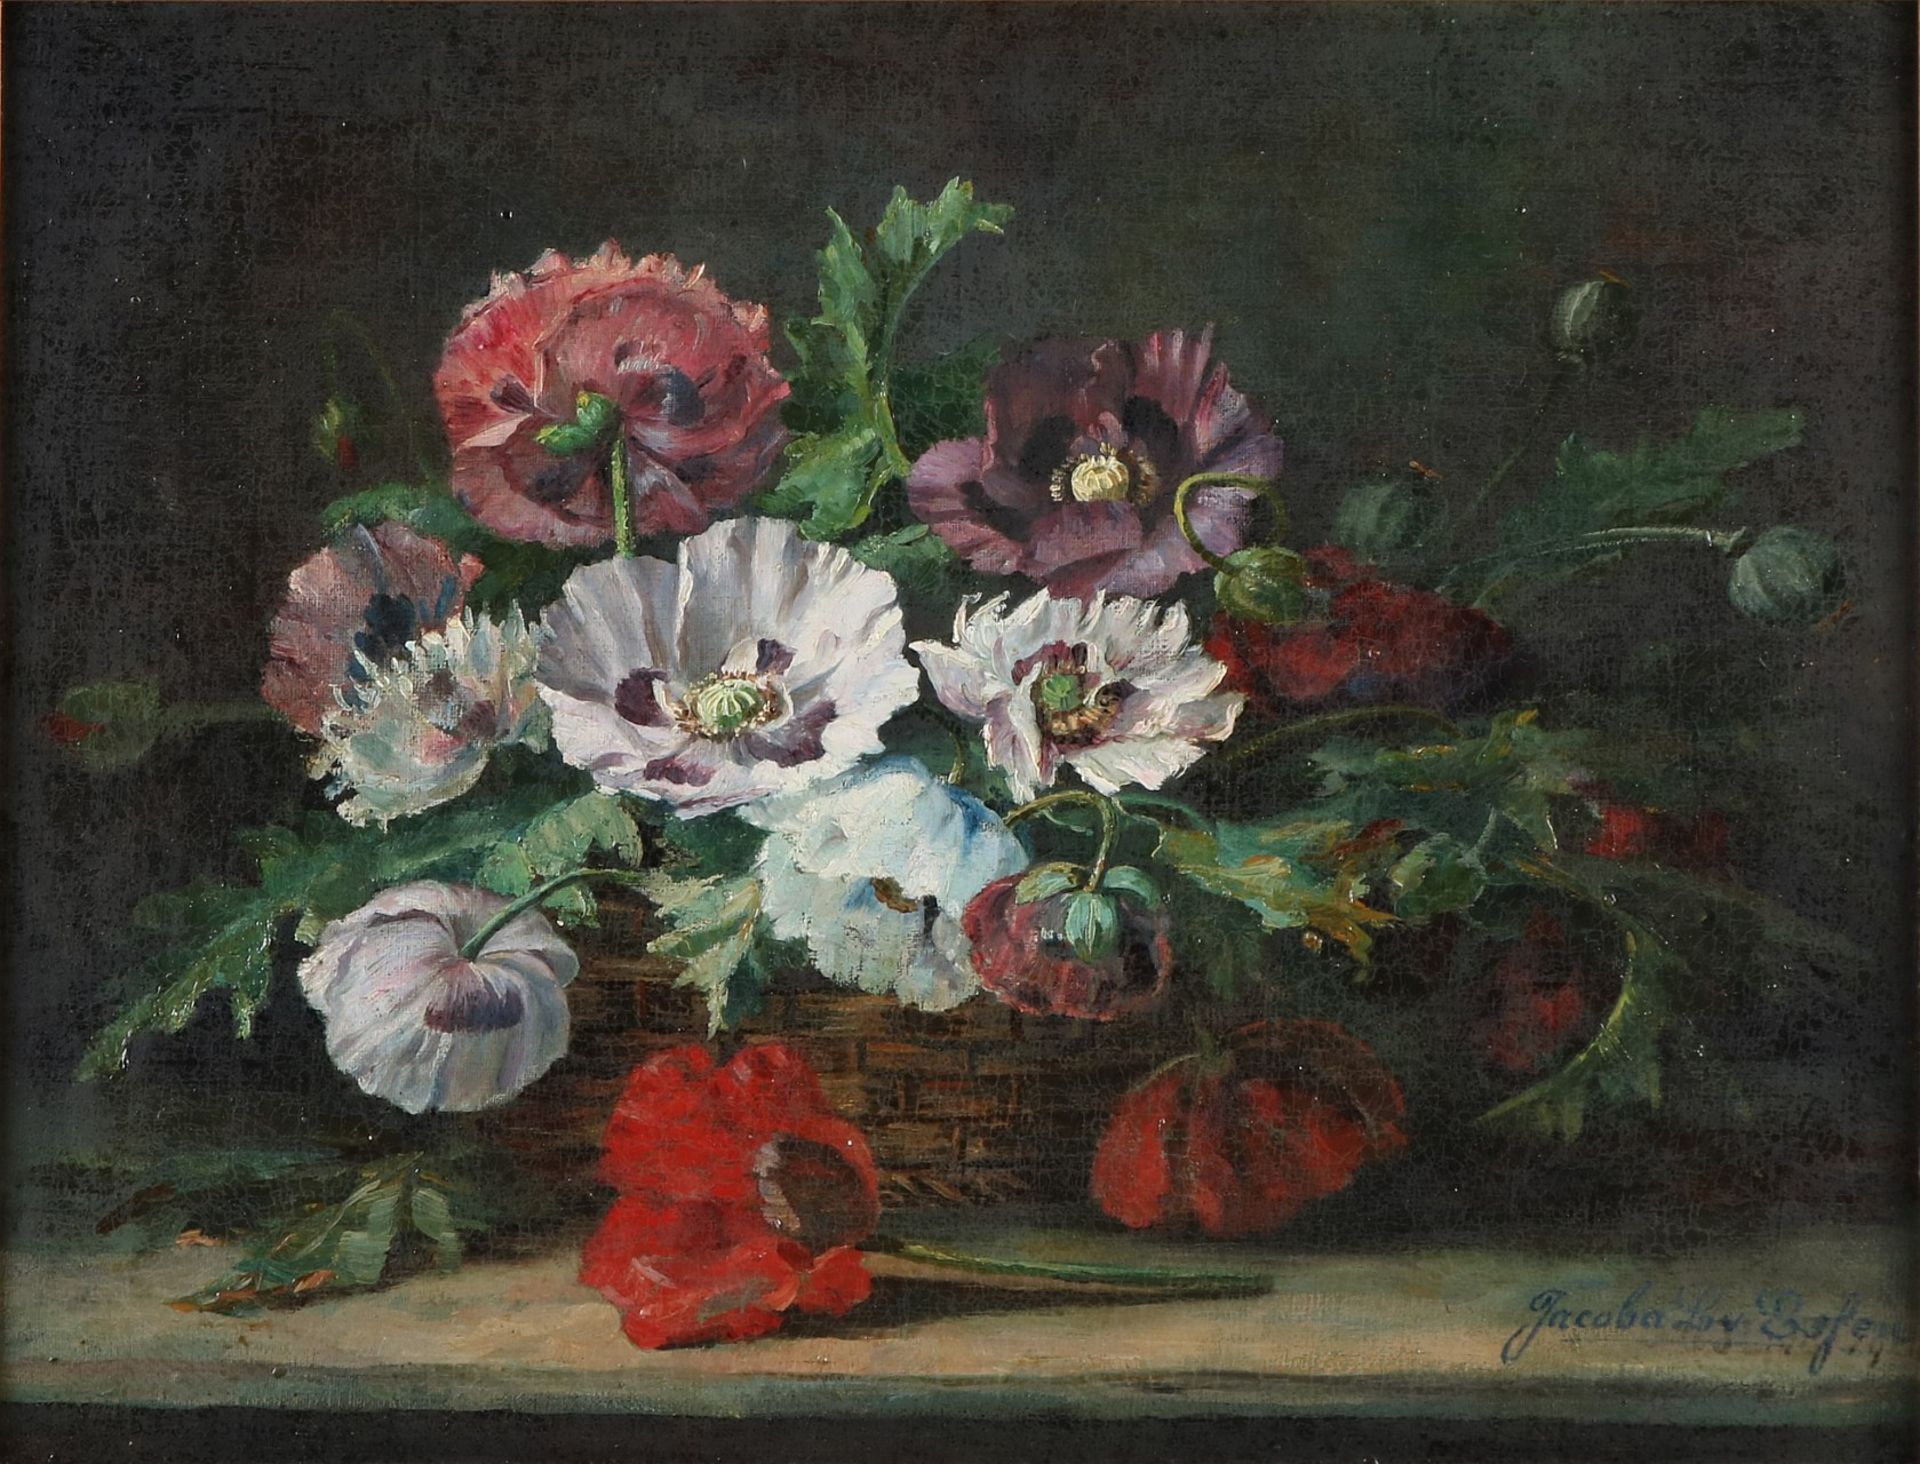 Signiert Jacoba L. v. Eefen. Um 1900. Stillleben, Korb mit Blumen. Öl auf Leinen. Eingebettet. - Image 2 of 2